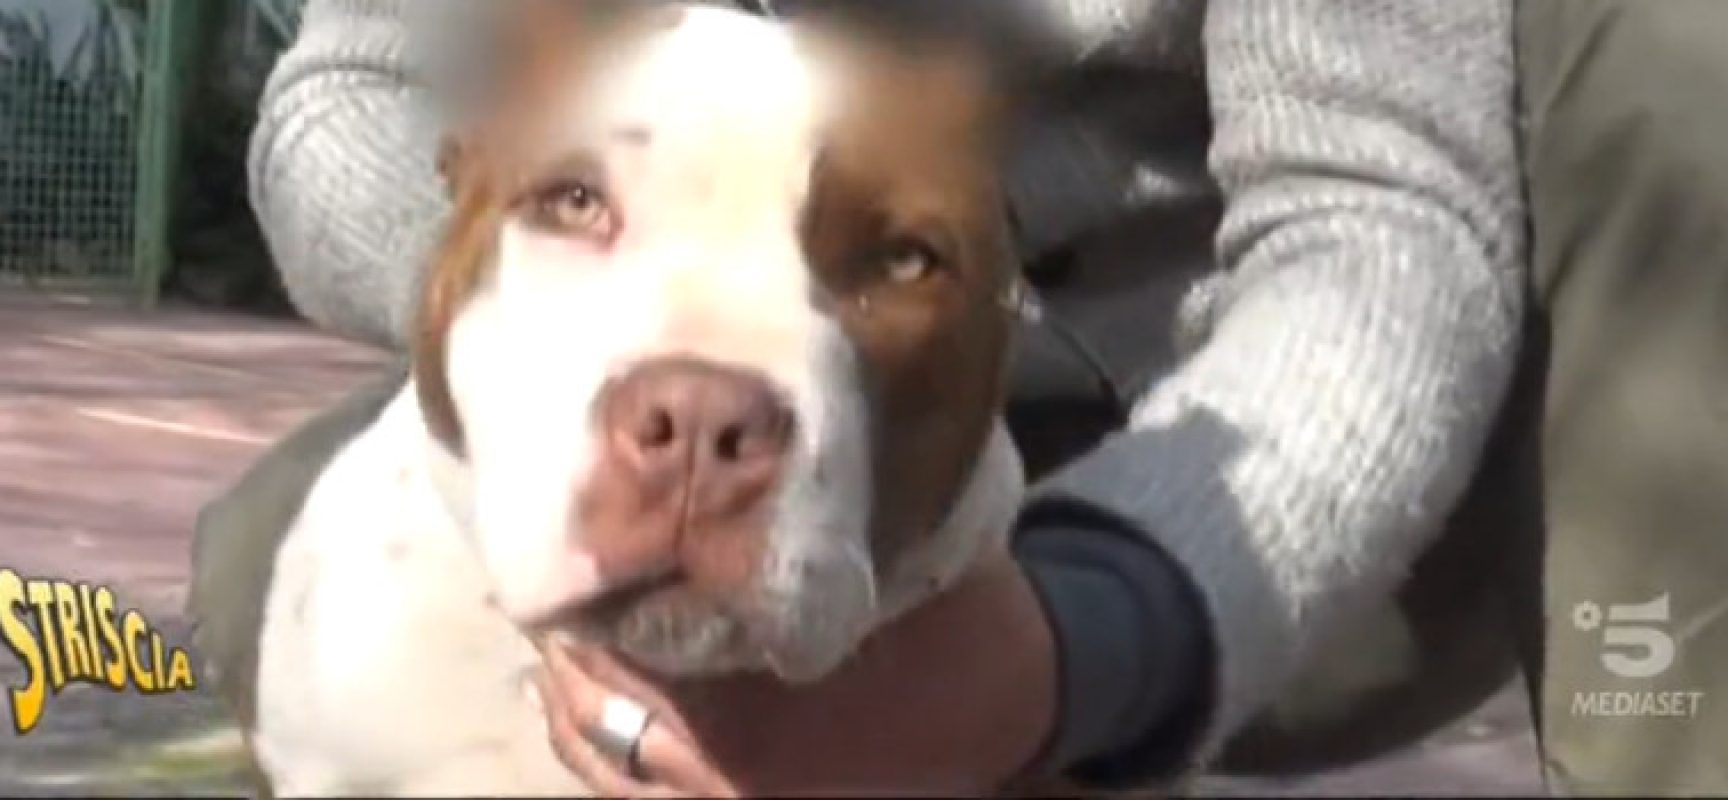 Striscia la notizia sul caso del Pitbull ferito salvato a Bisceglie